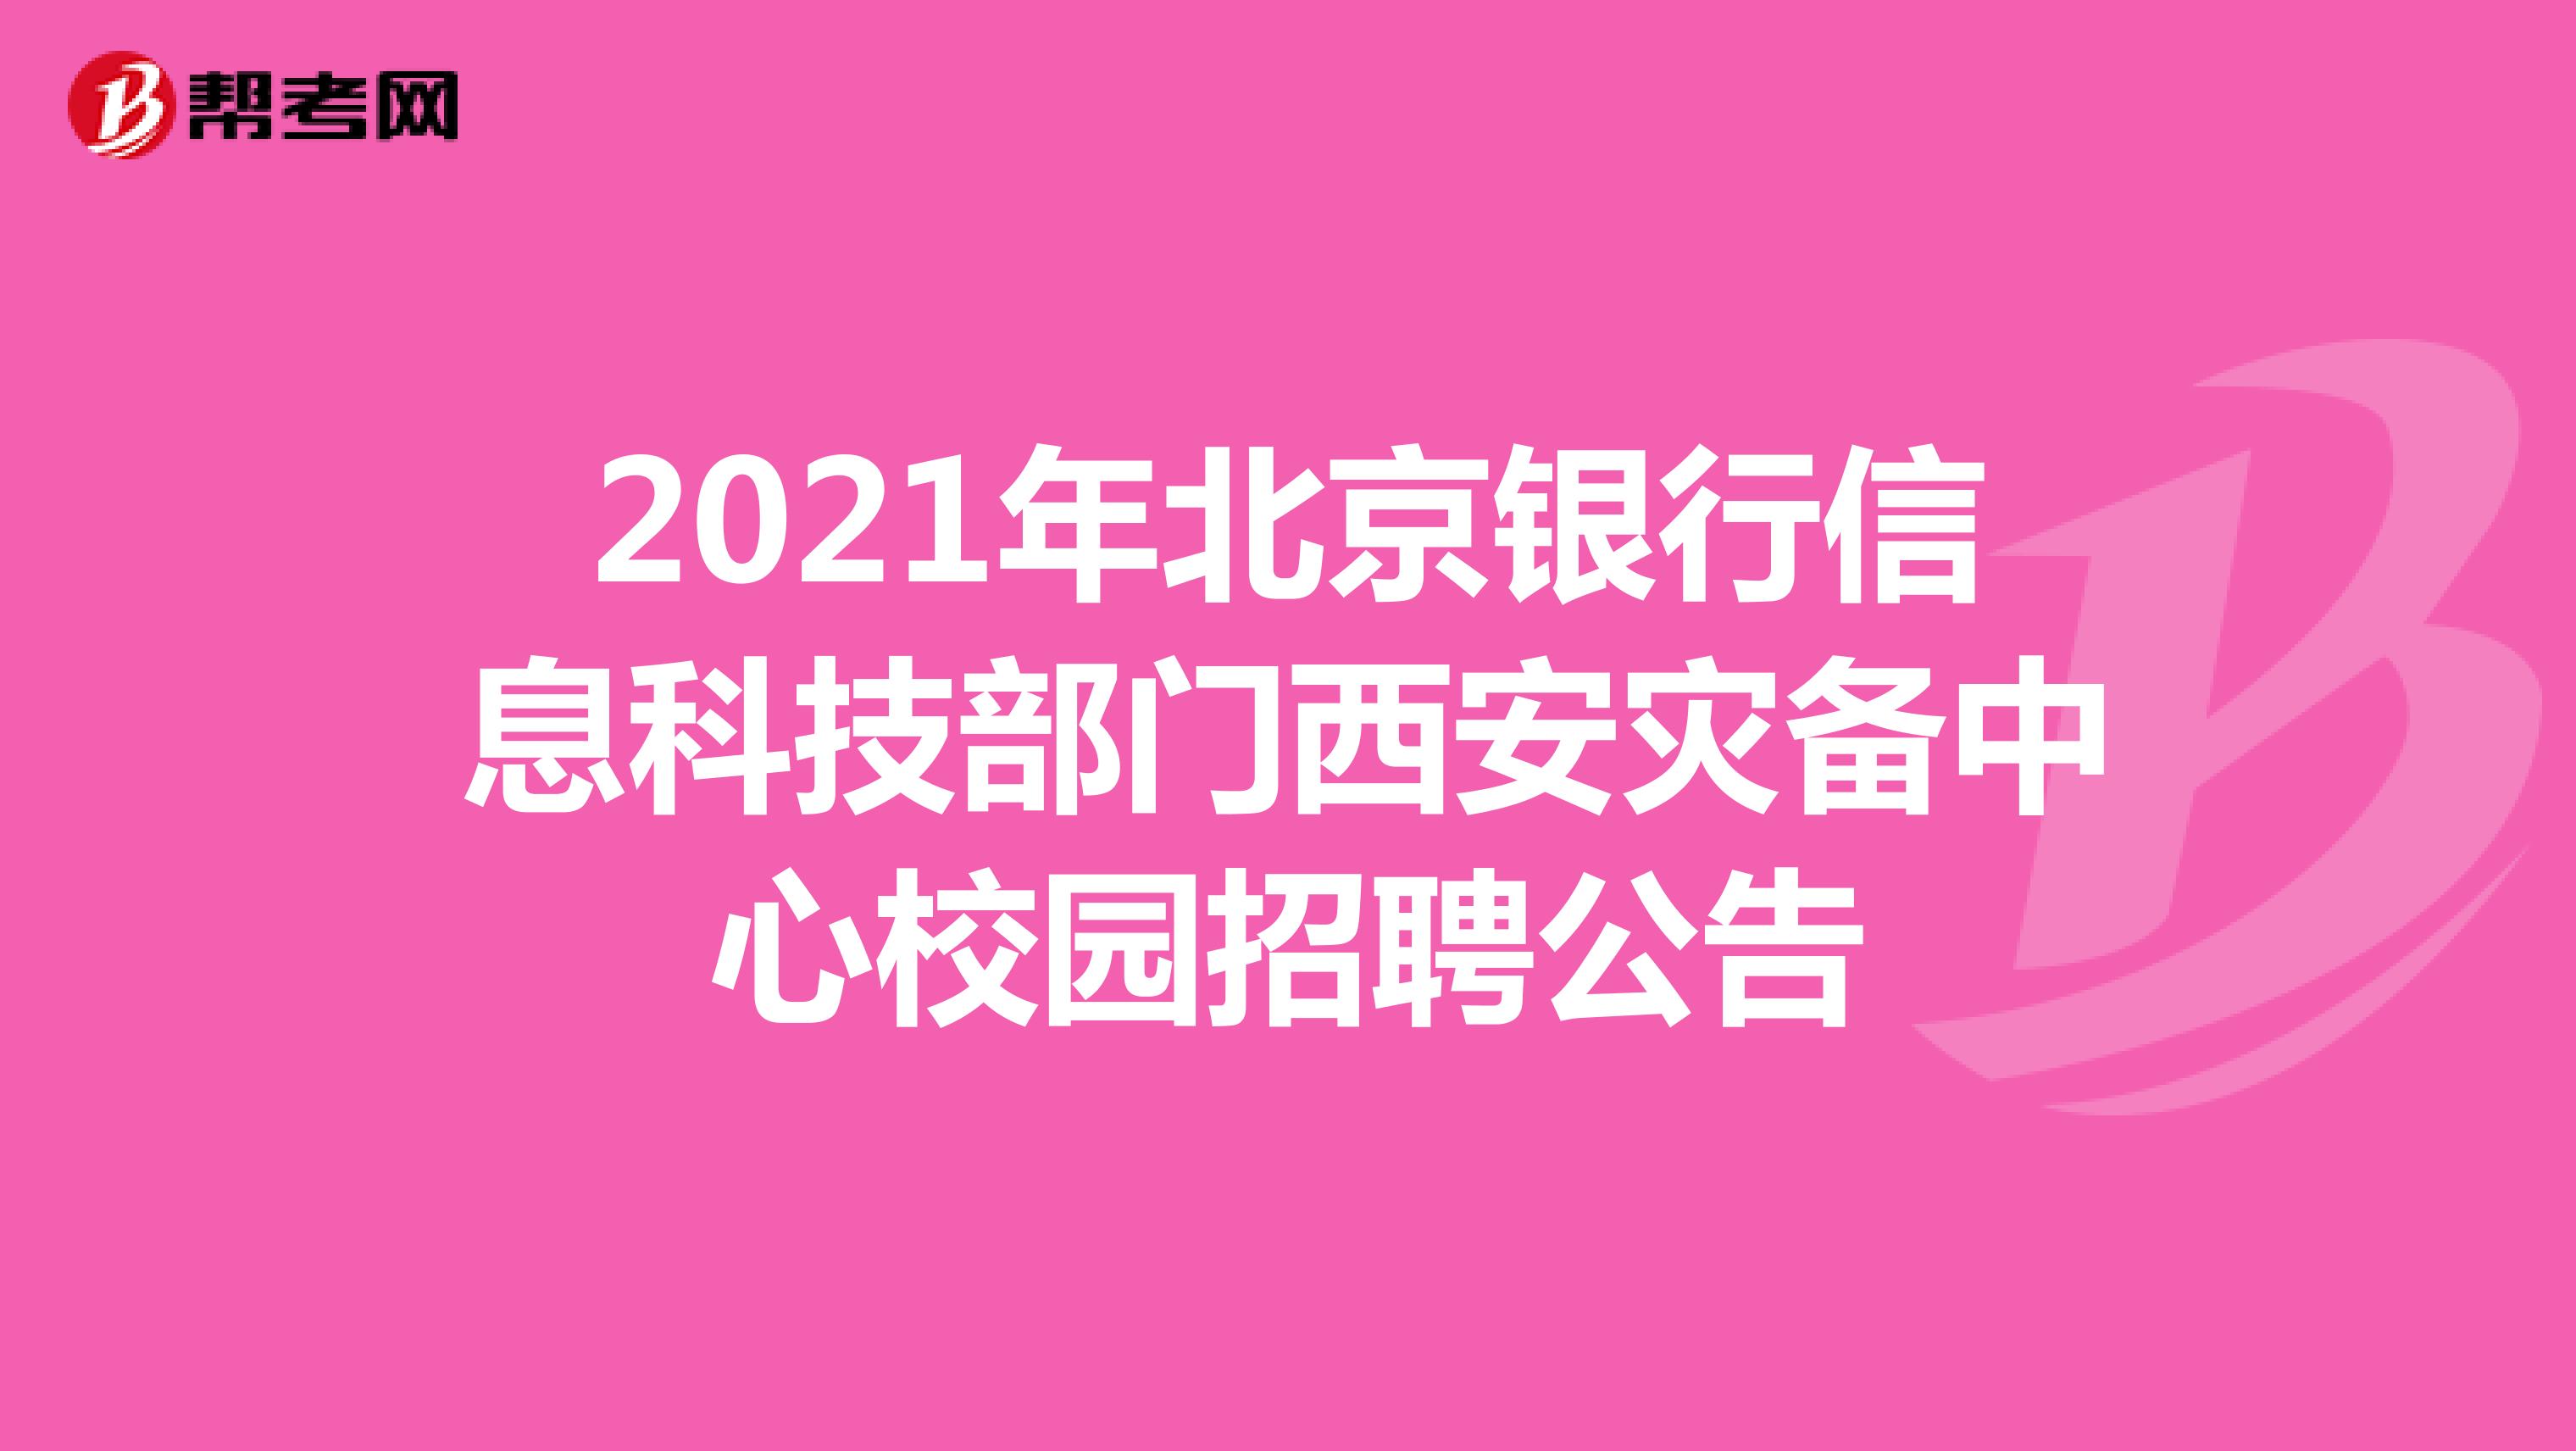 2021年北京银行信息科技部门西安灾备中心校园招聘公告